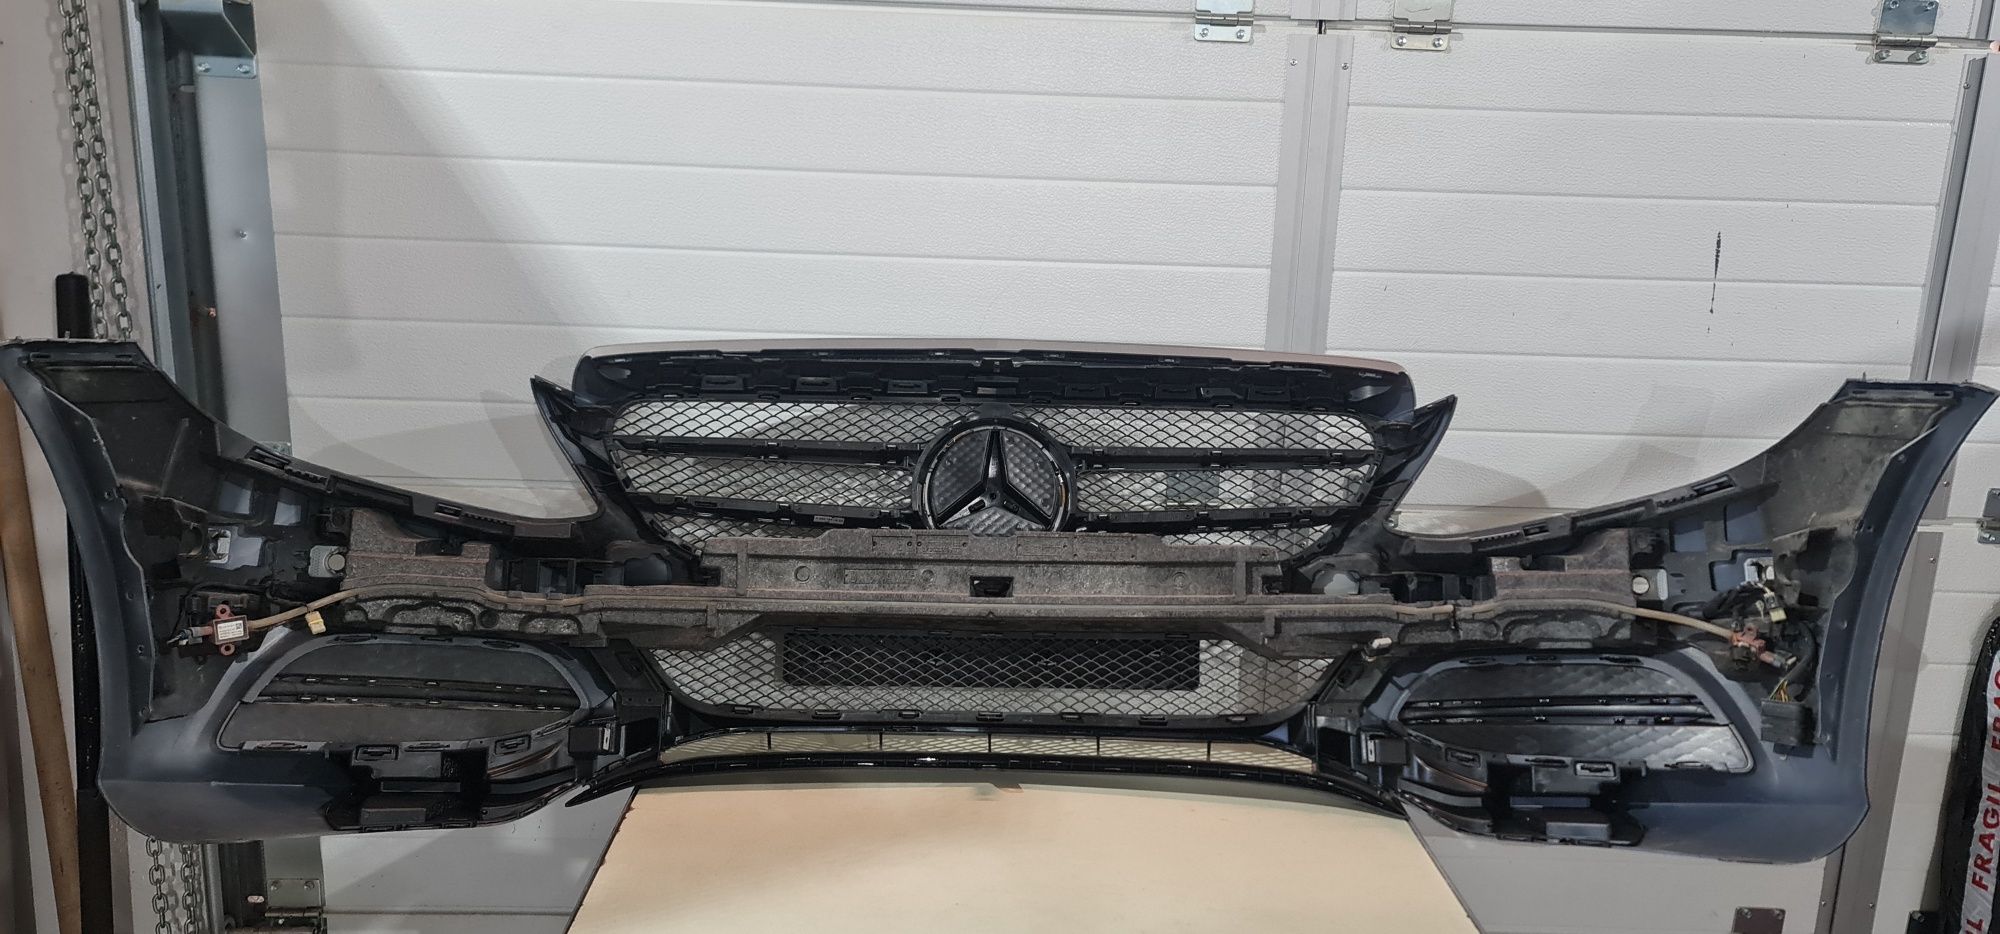 Bară față complecta Mercedes C Class W205